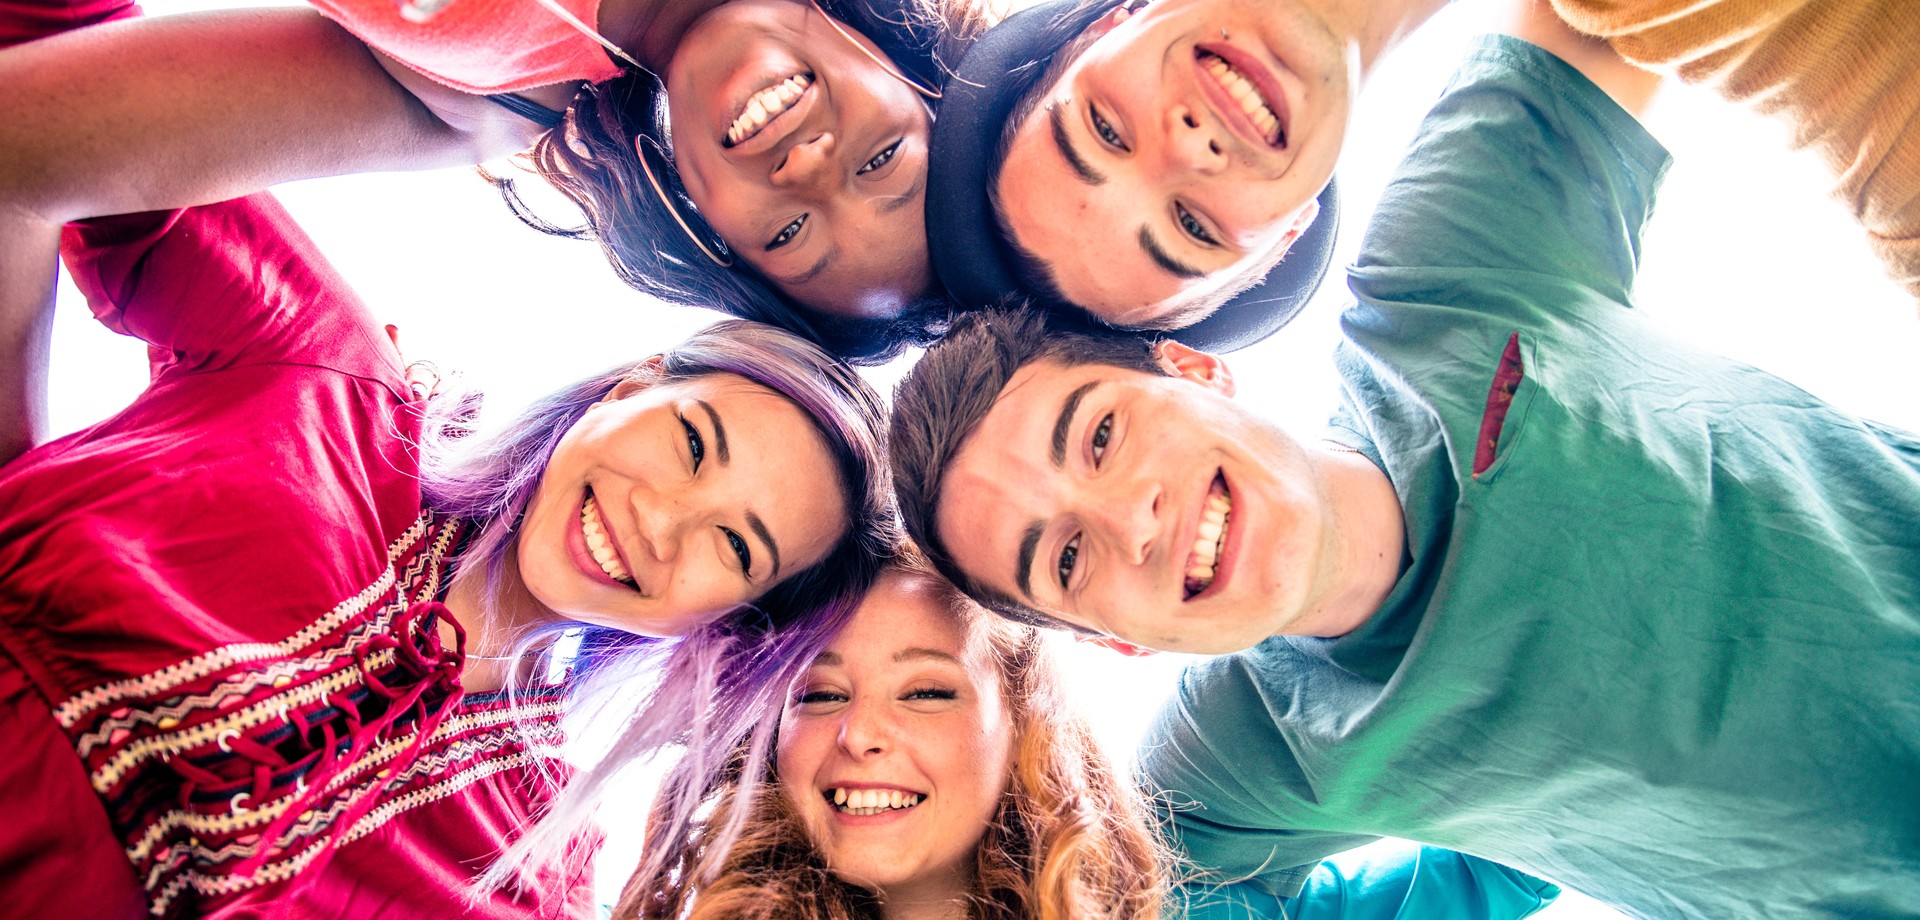 Foto von fünf Kindern und Jugendlichen, die glücklich in die Kamera lachen (Foto: AdobeStock/oneinchpunch).